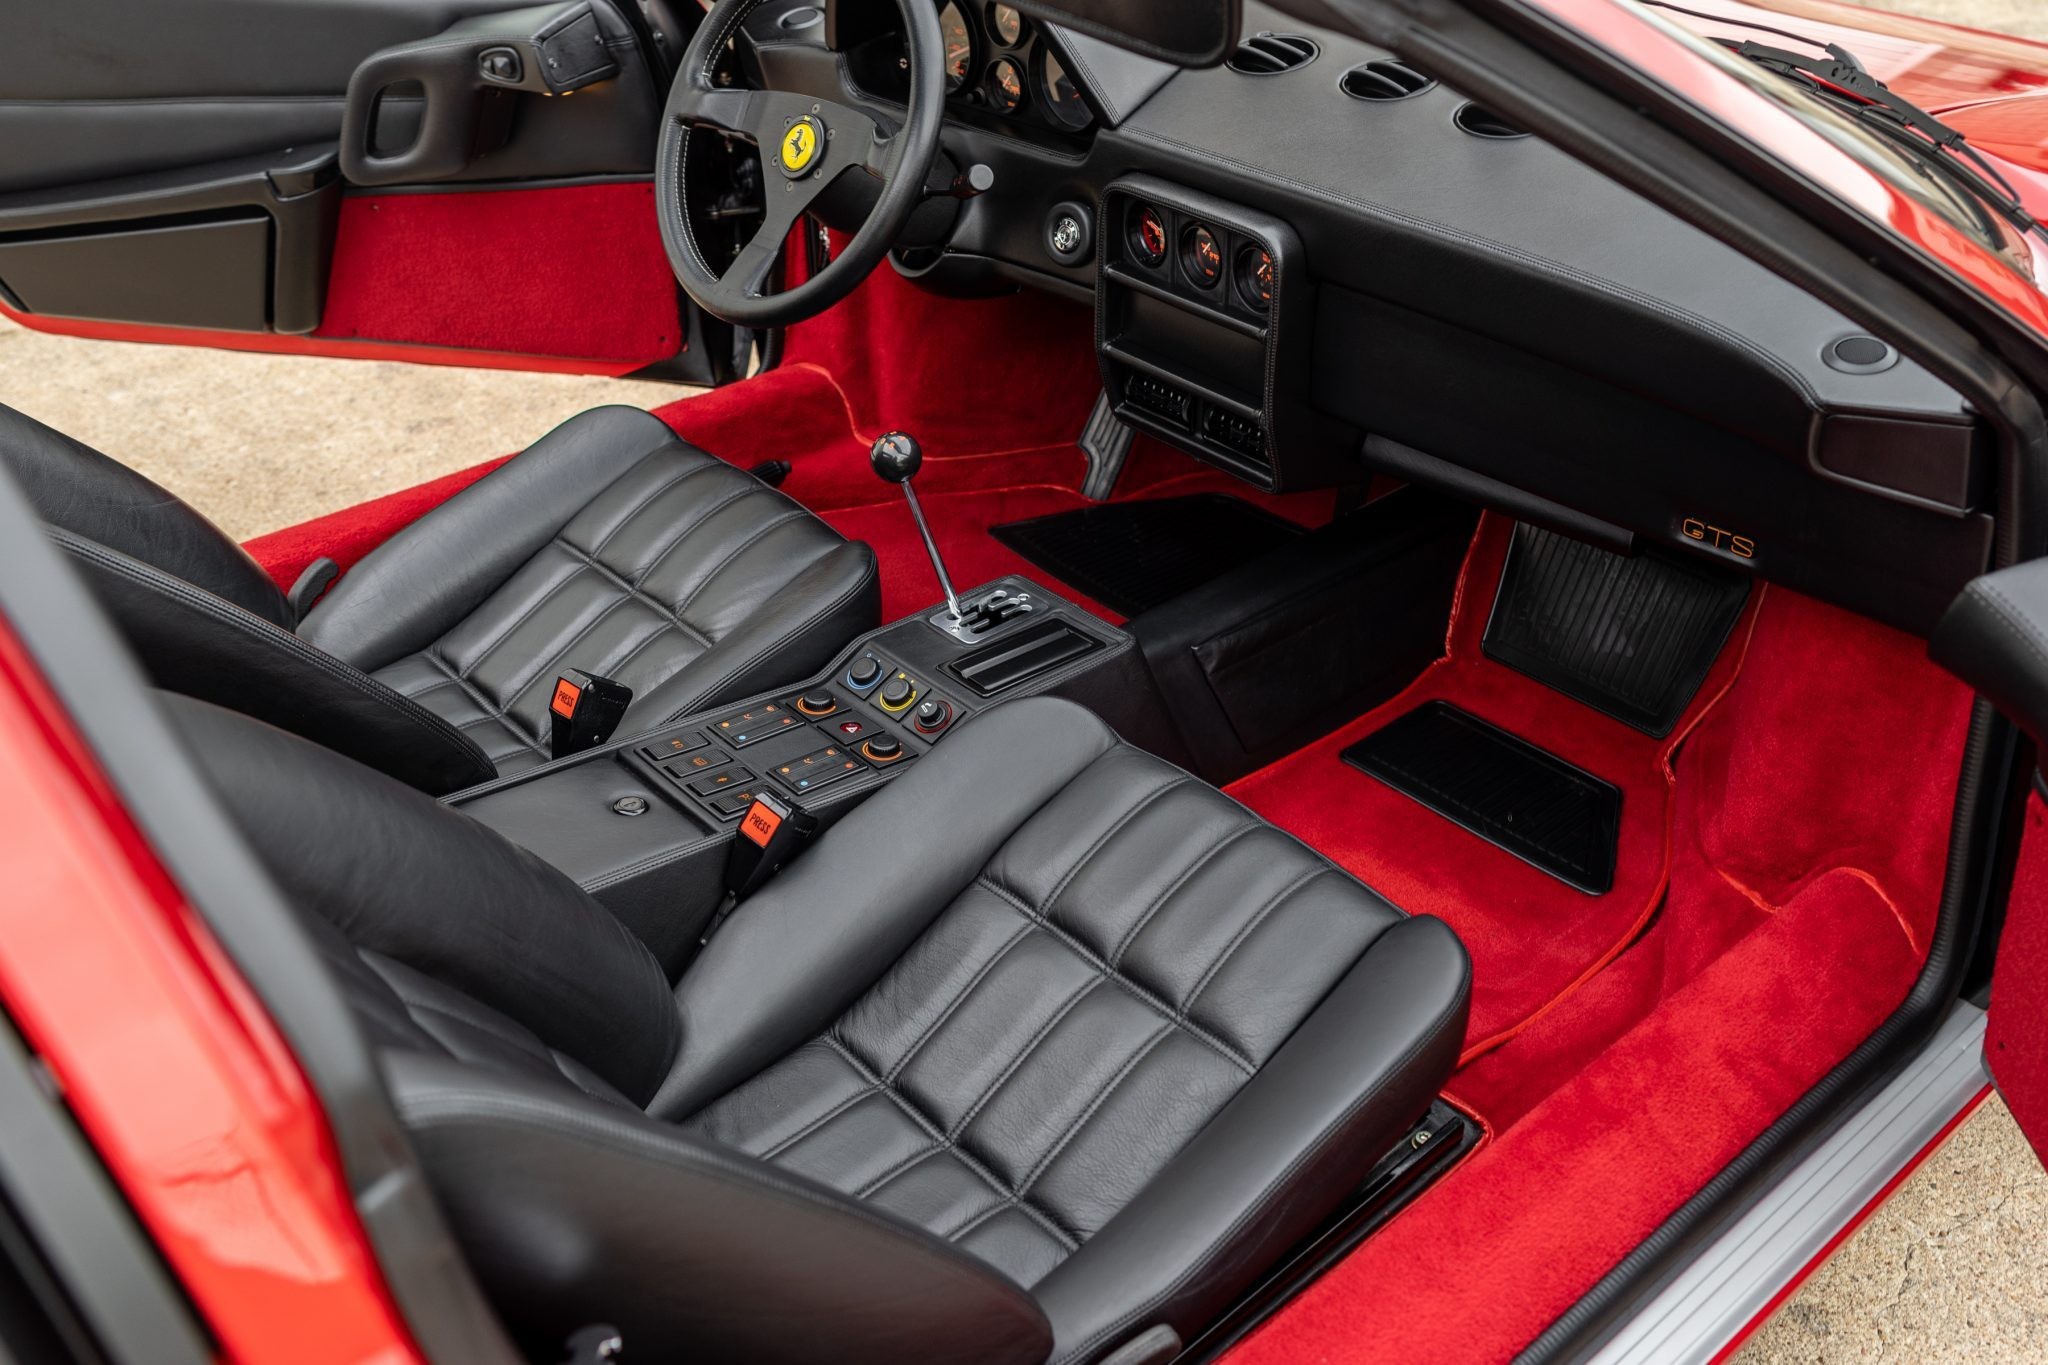 Идеальный Ferrari 328 GTS, который проехал всего 375 километров